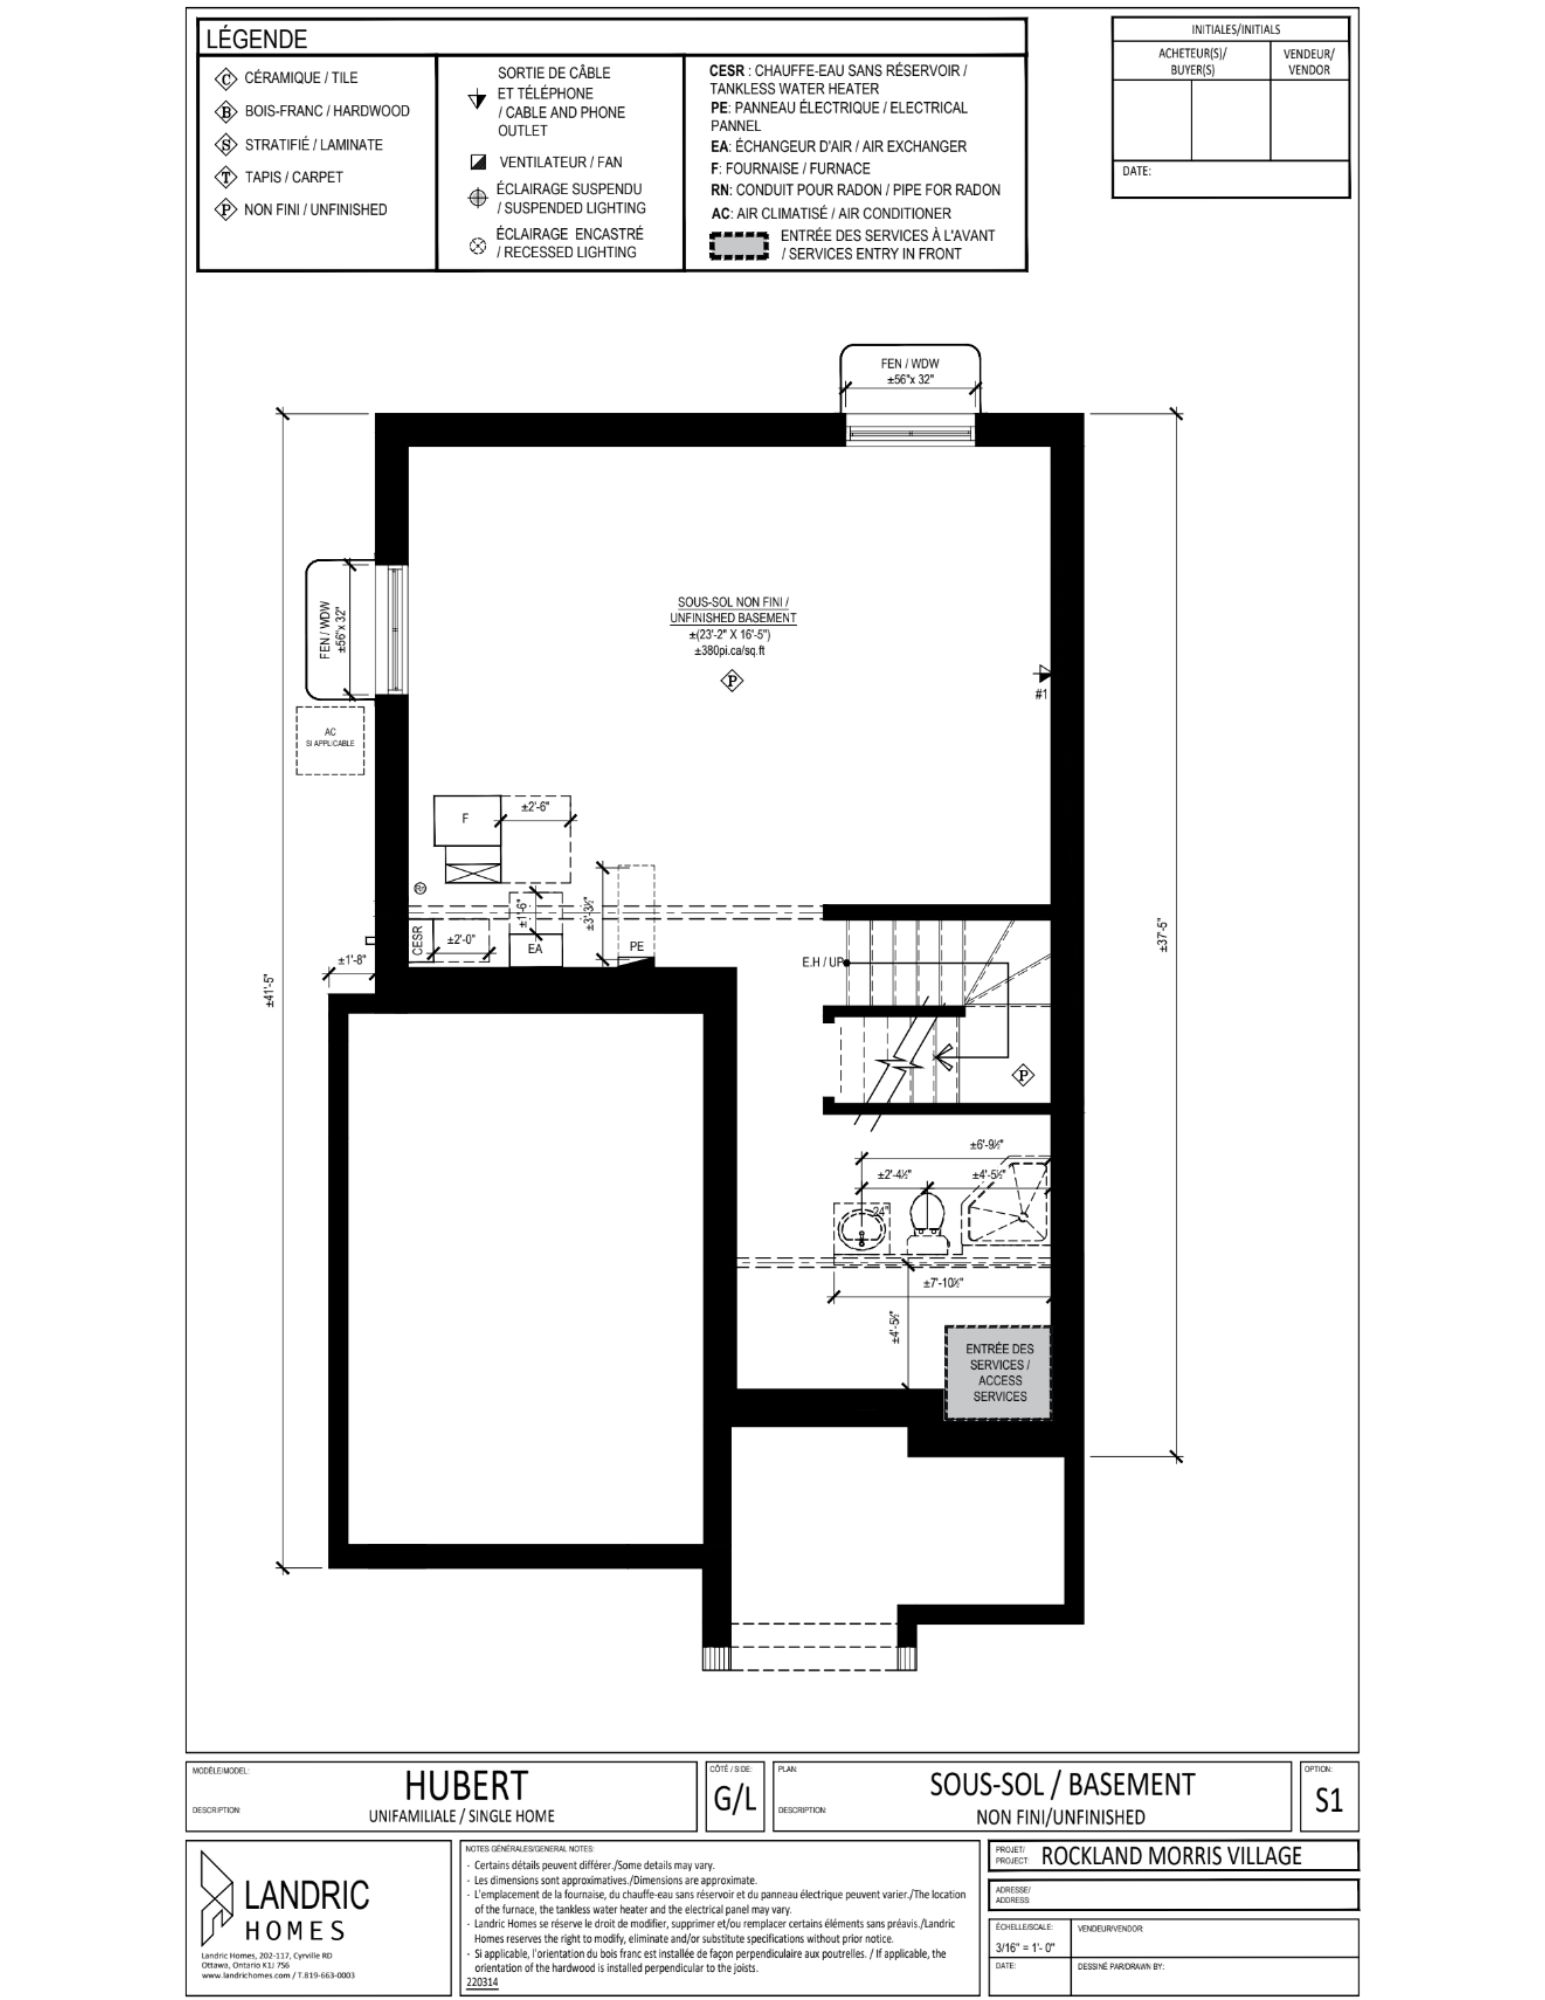 Beaumont, Morris Village floor plans (14)